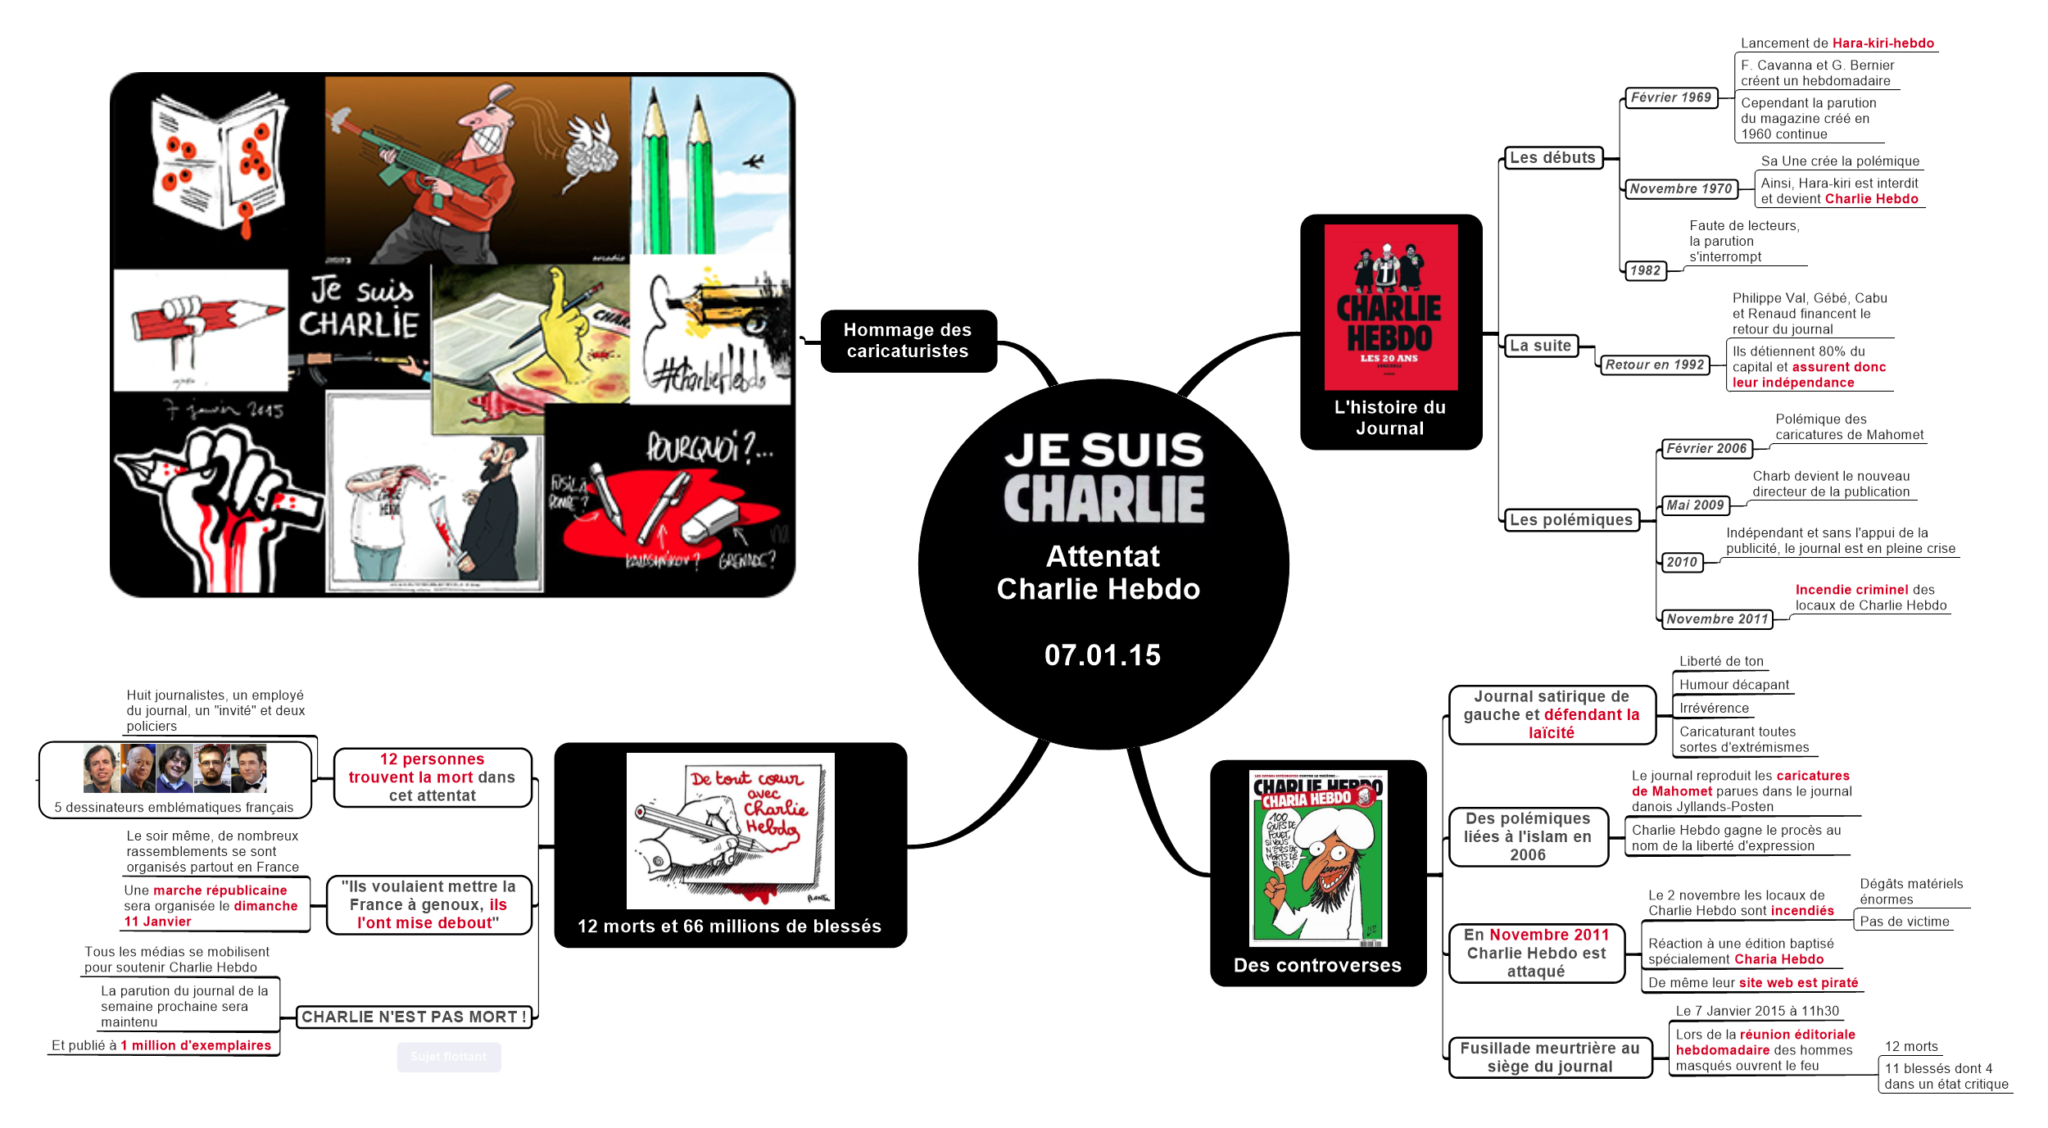 Attentat Charlie Hebdo 07 01 15 (2)